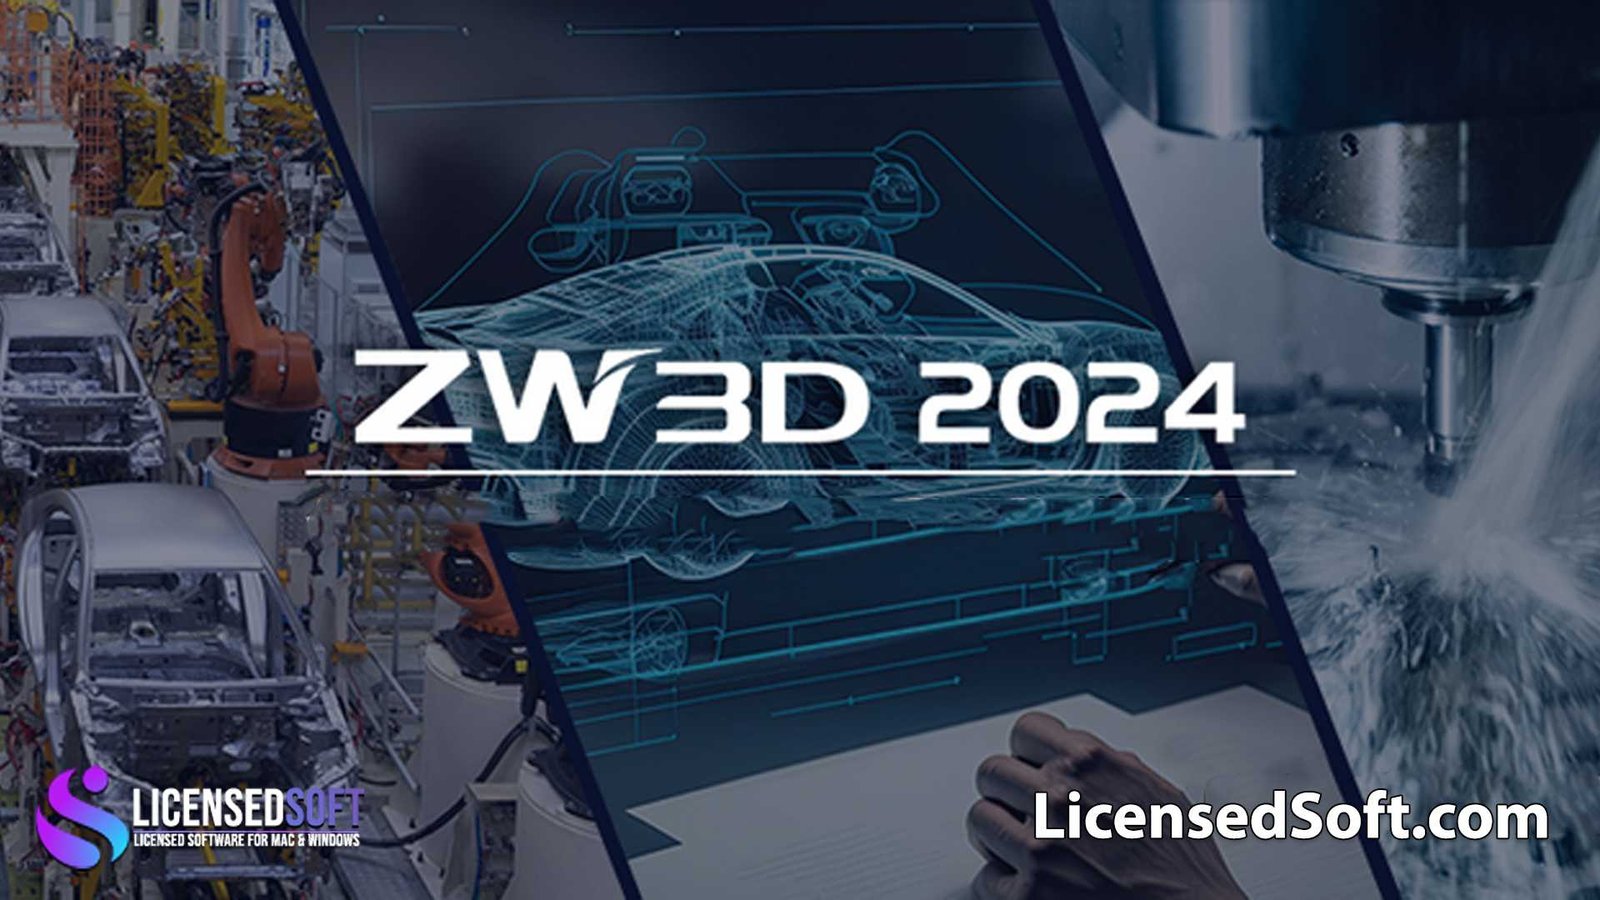 ZW3D 2024 SP v28.05 Full Premium By LicensedSoft